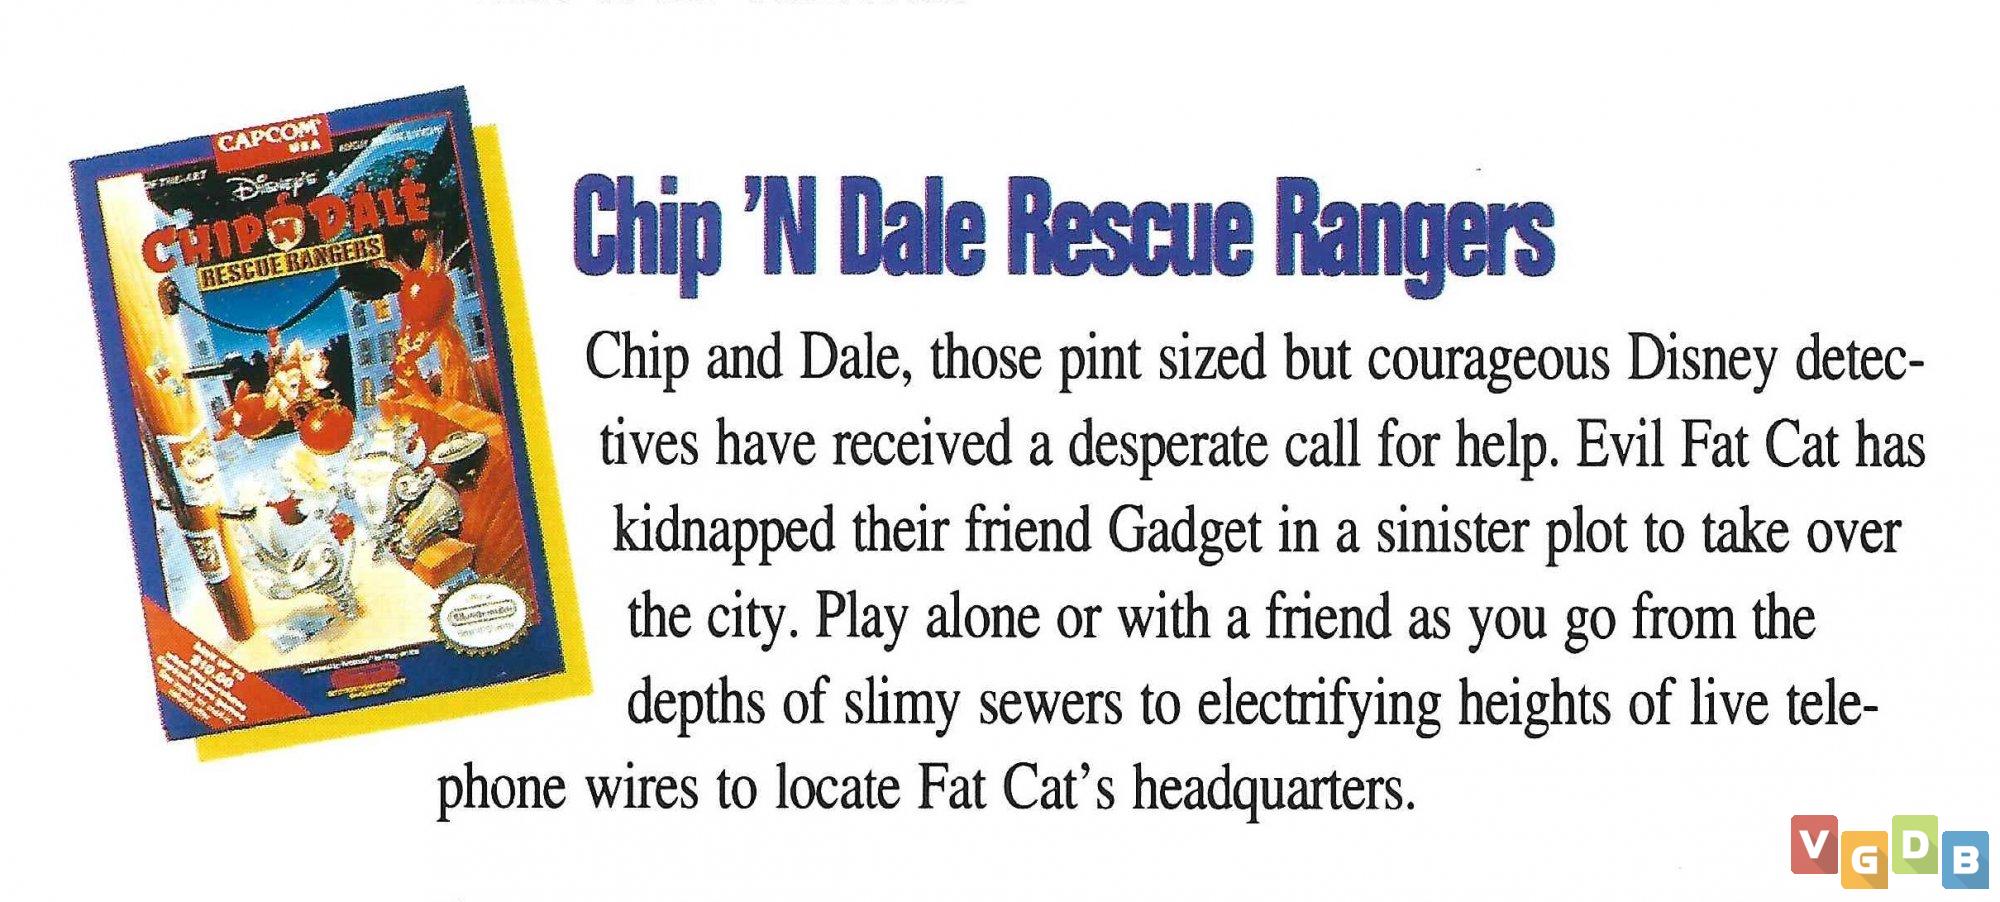 Recordar é envelhecer: Chip´n Dale – Rescue Rangers (NES) – GAGÁ GAMES